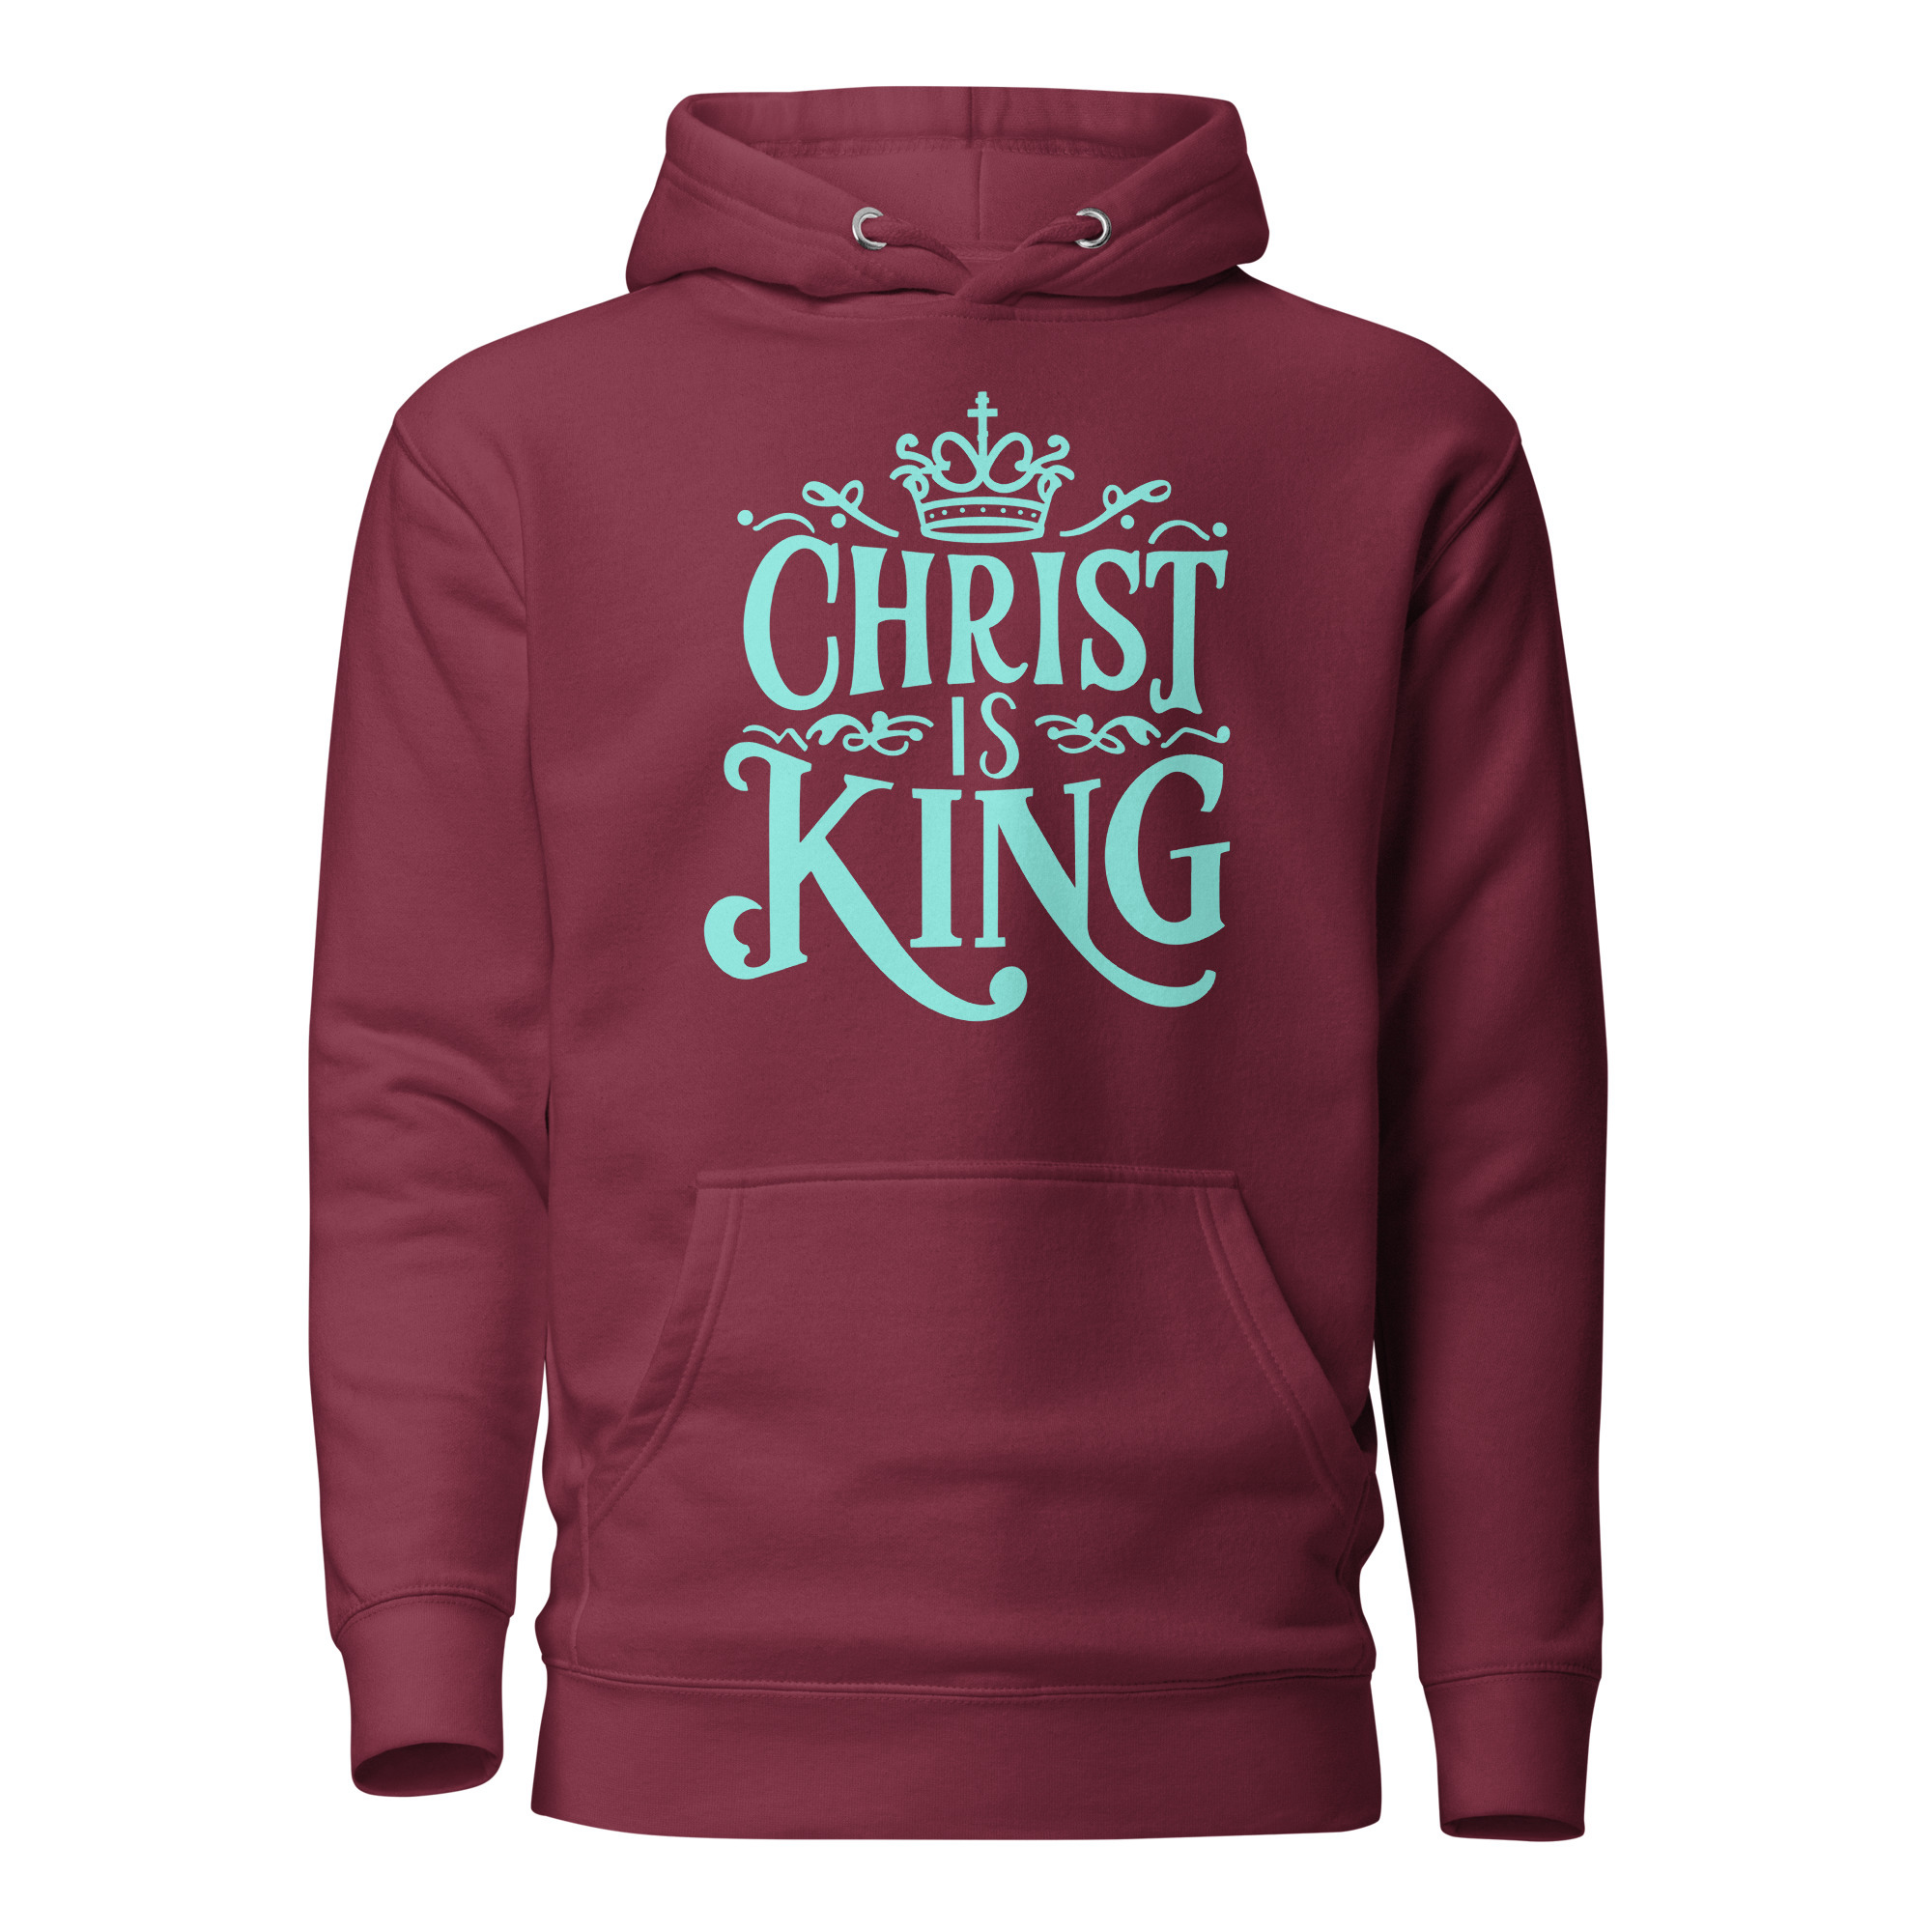 Christ is King 2.0 Hoodie - Maroon / XL